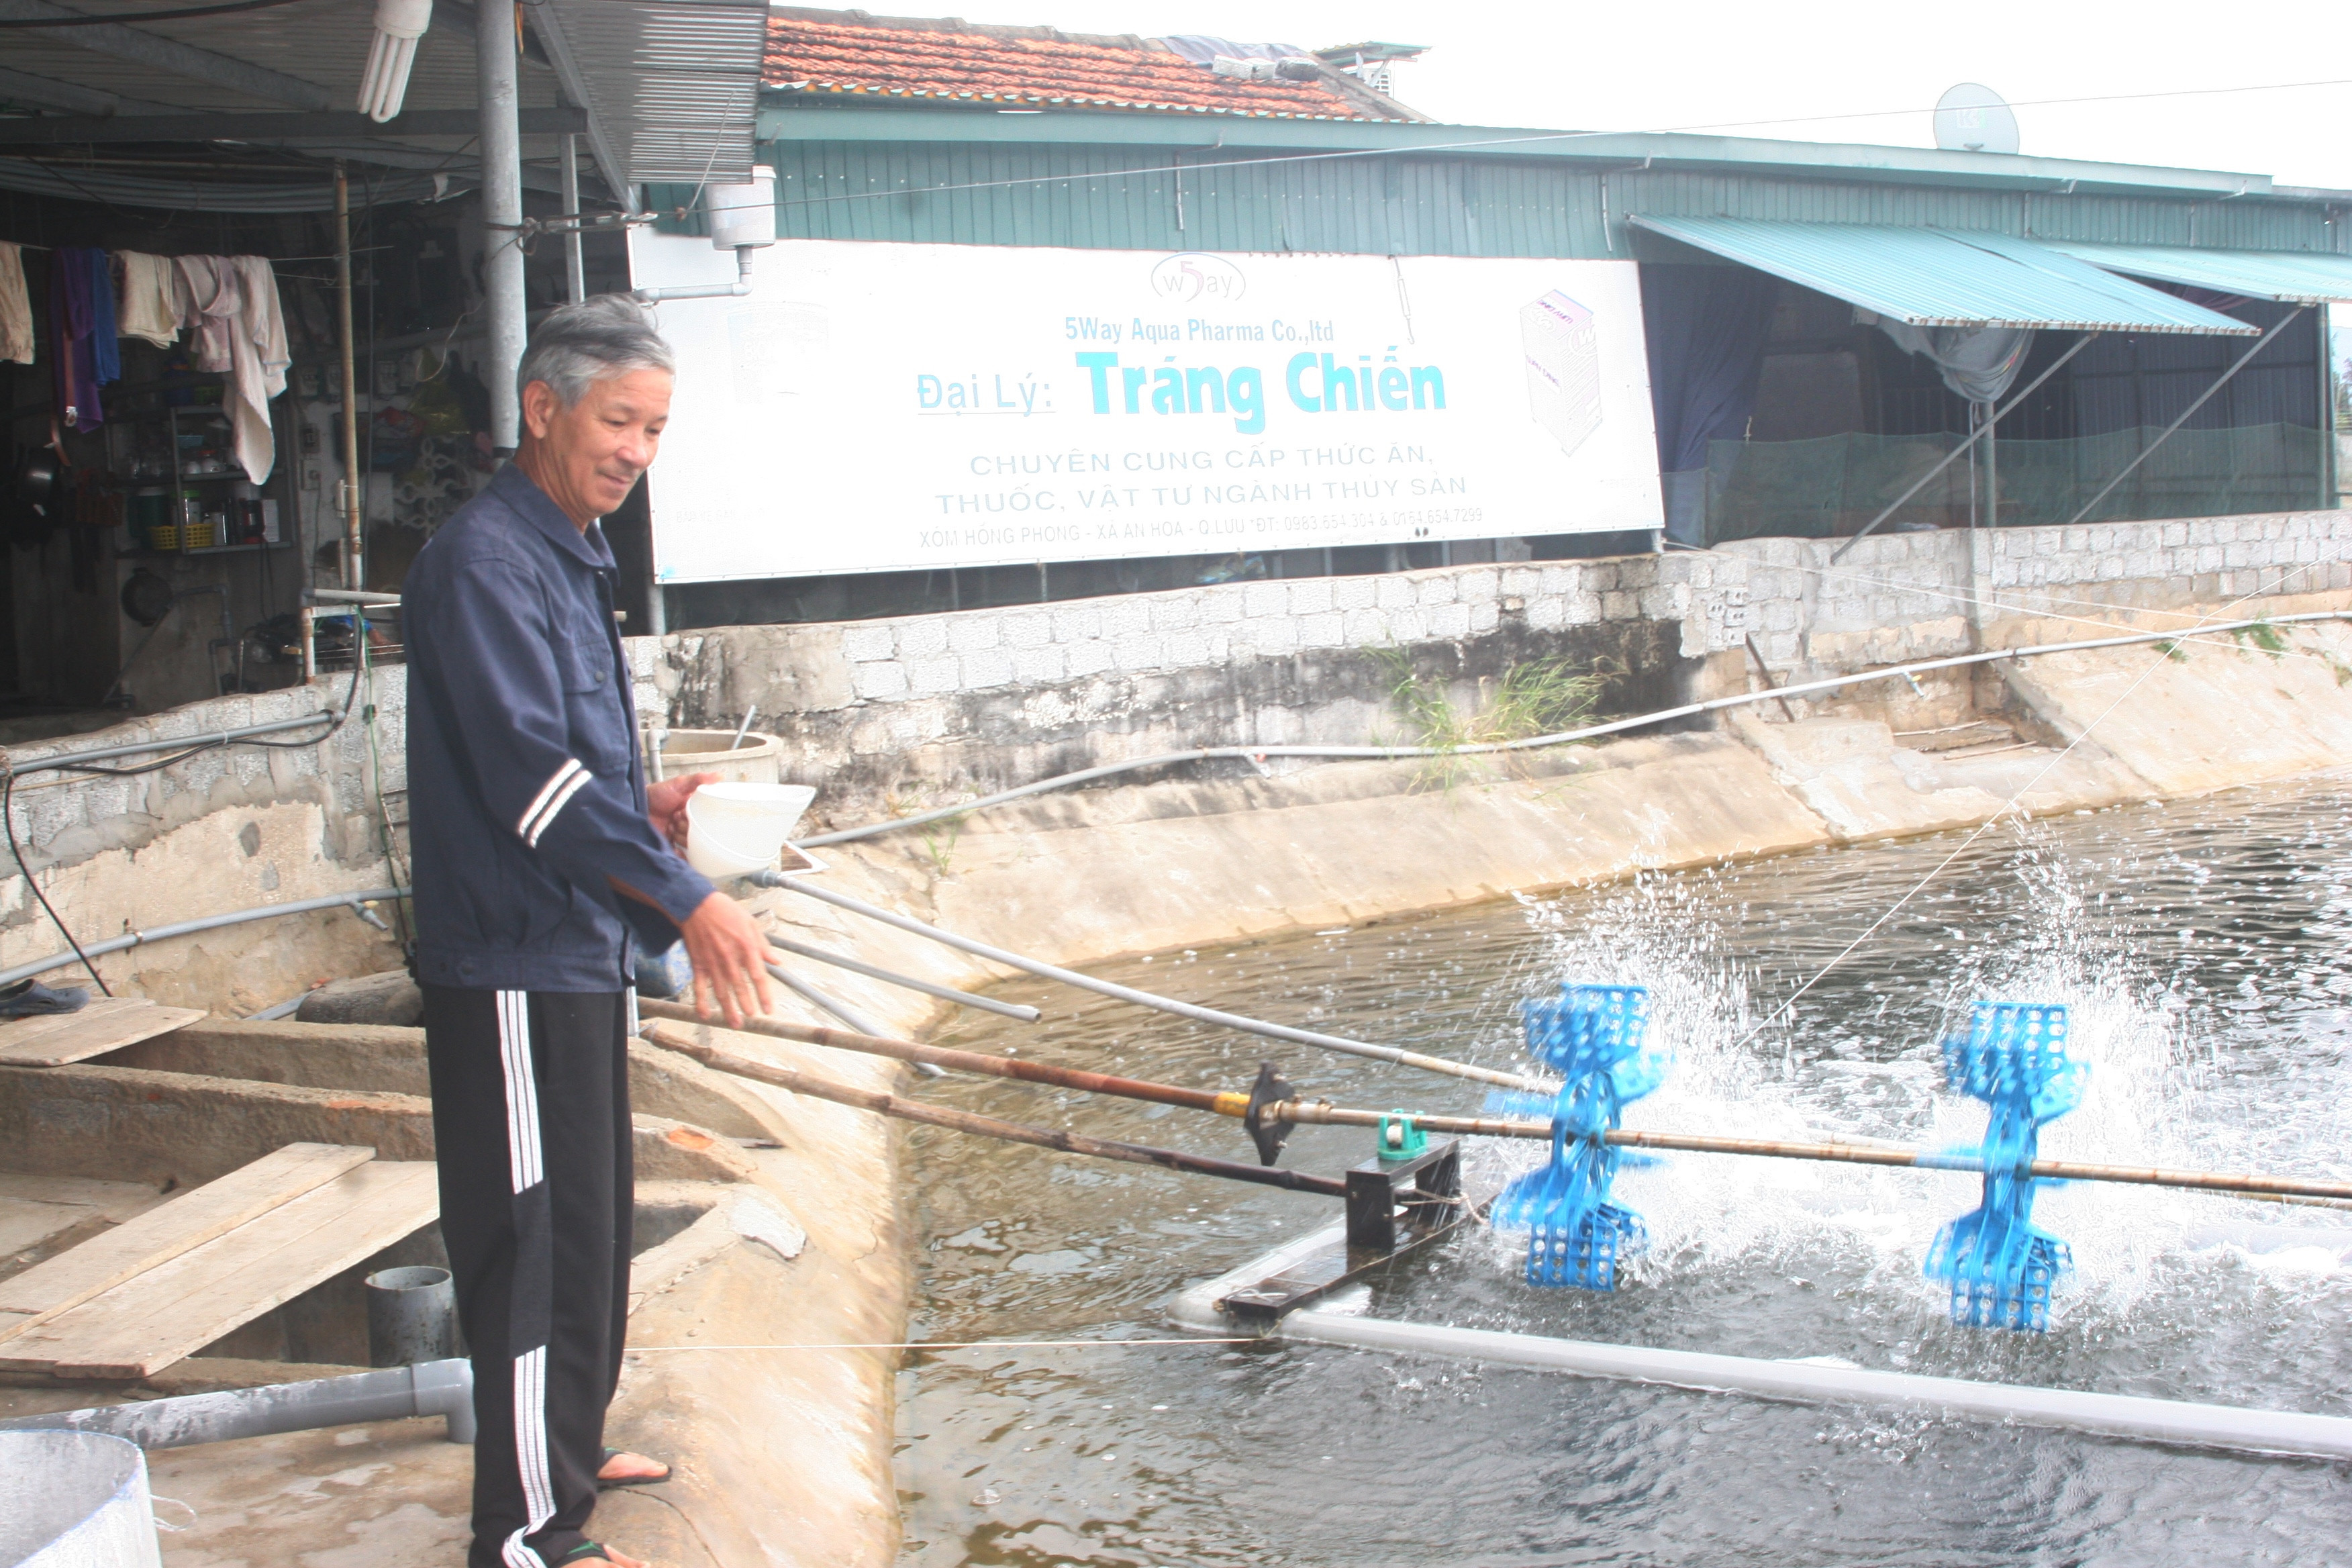 Ông Nguyễn Văn Tráng, hộ nuôi tôm ở xã An Hòa (Quỳnh Lưu) kiểm tra ao, bổ sung thức ăn phòng bệnh cho tôm. Ảnh: Việt Hùng